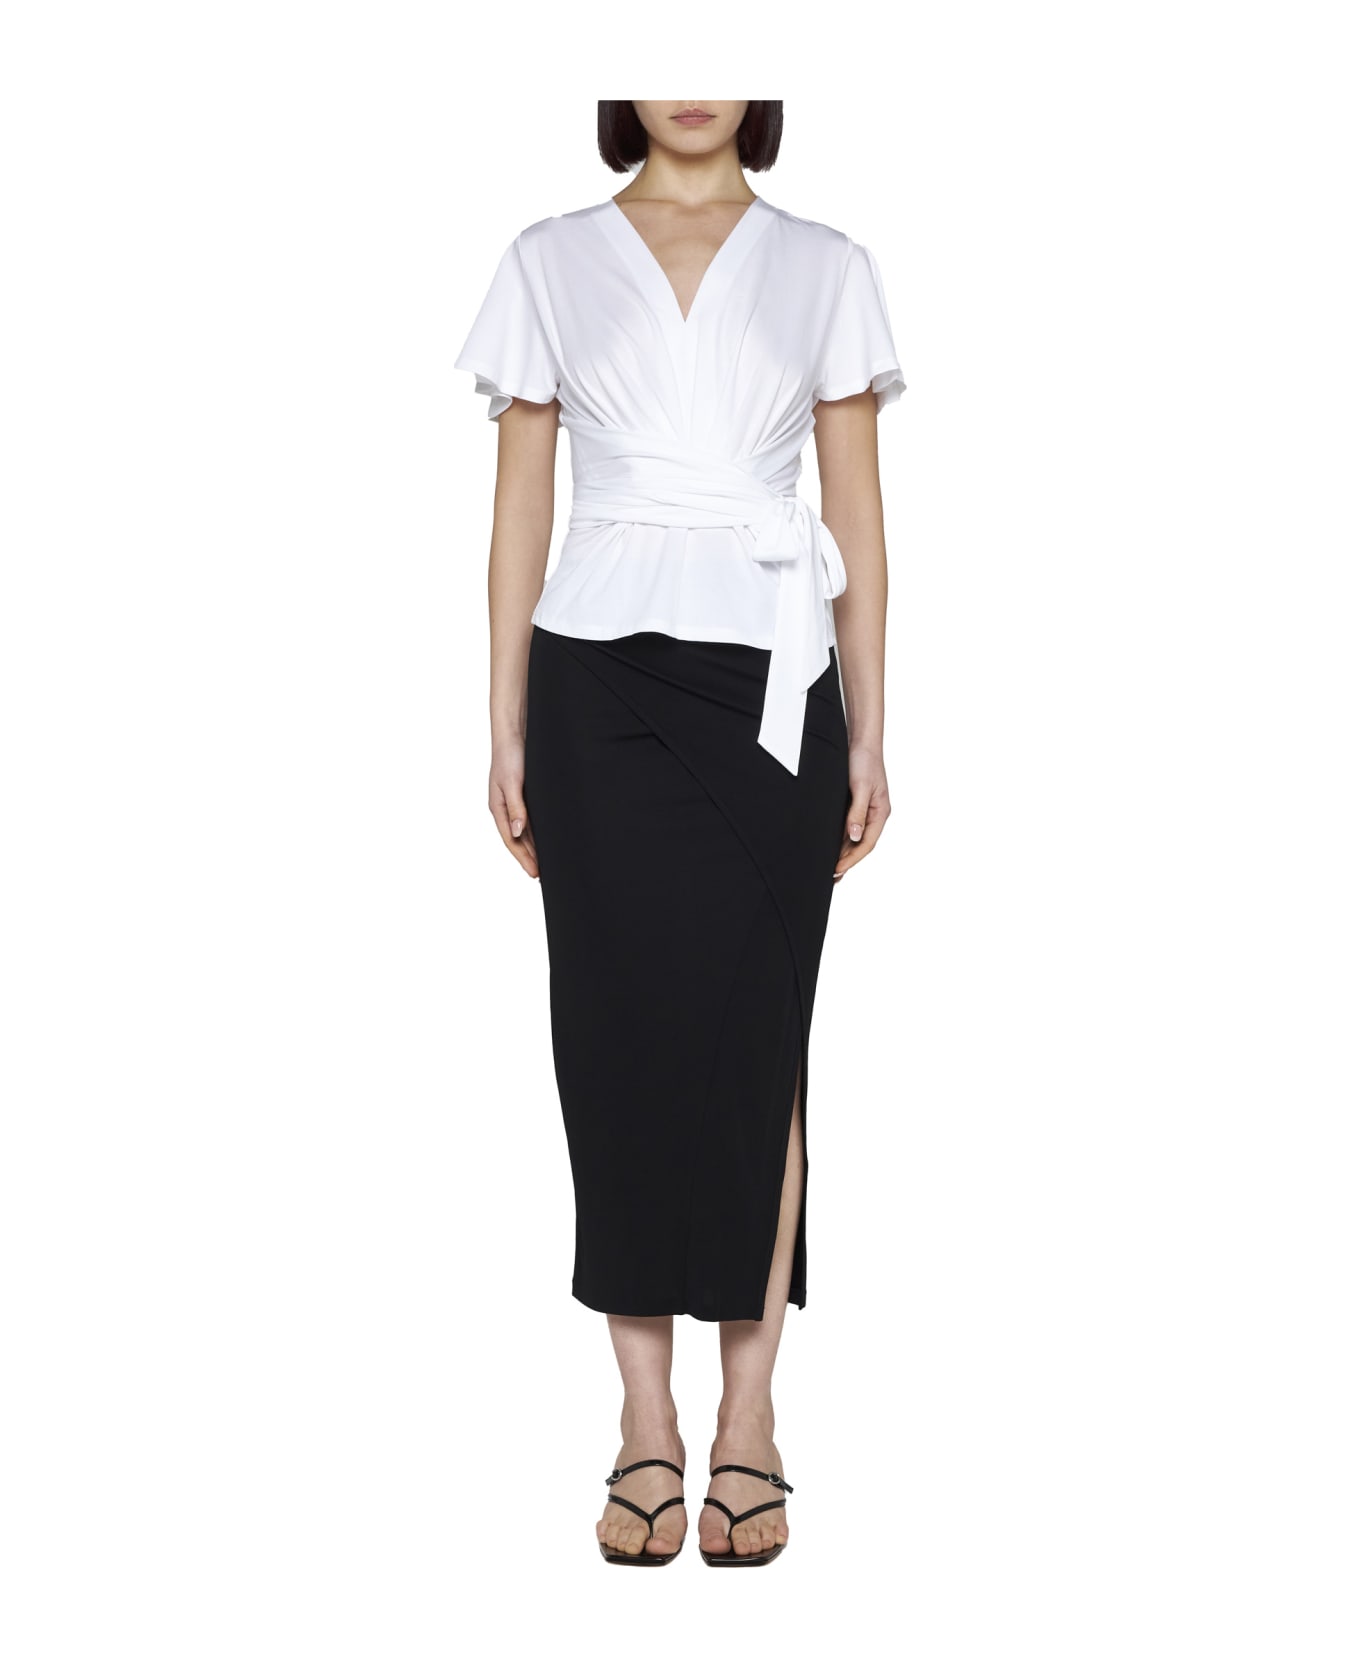 Diane Von Furstenberg Skirt - Black スカート